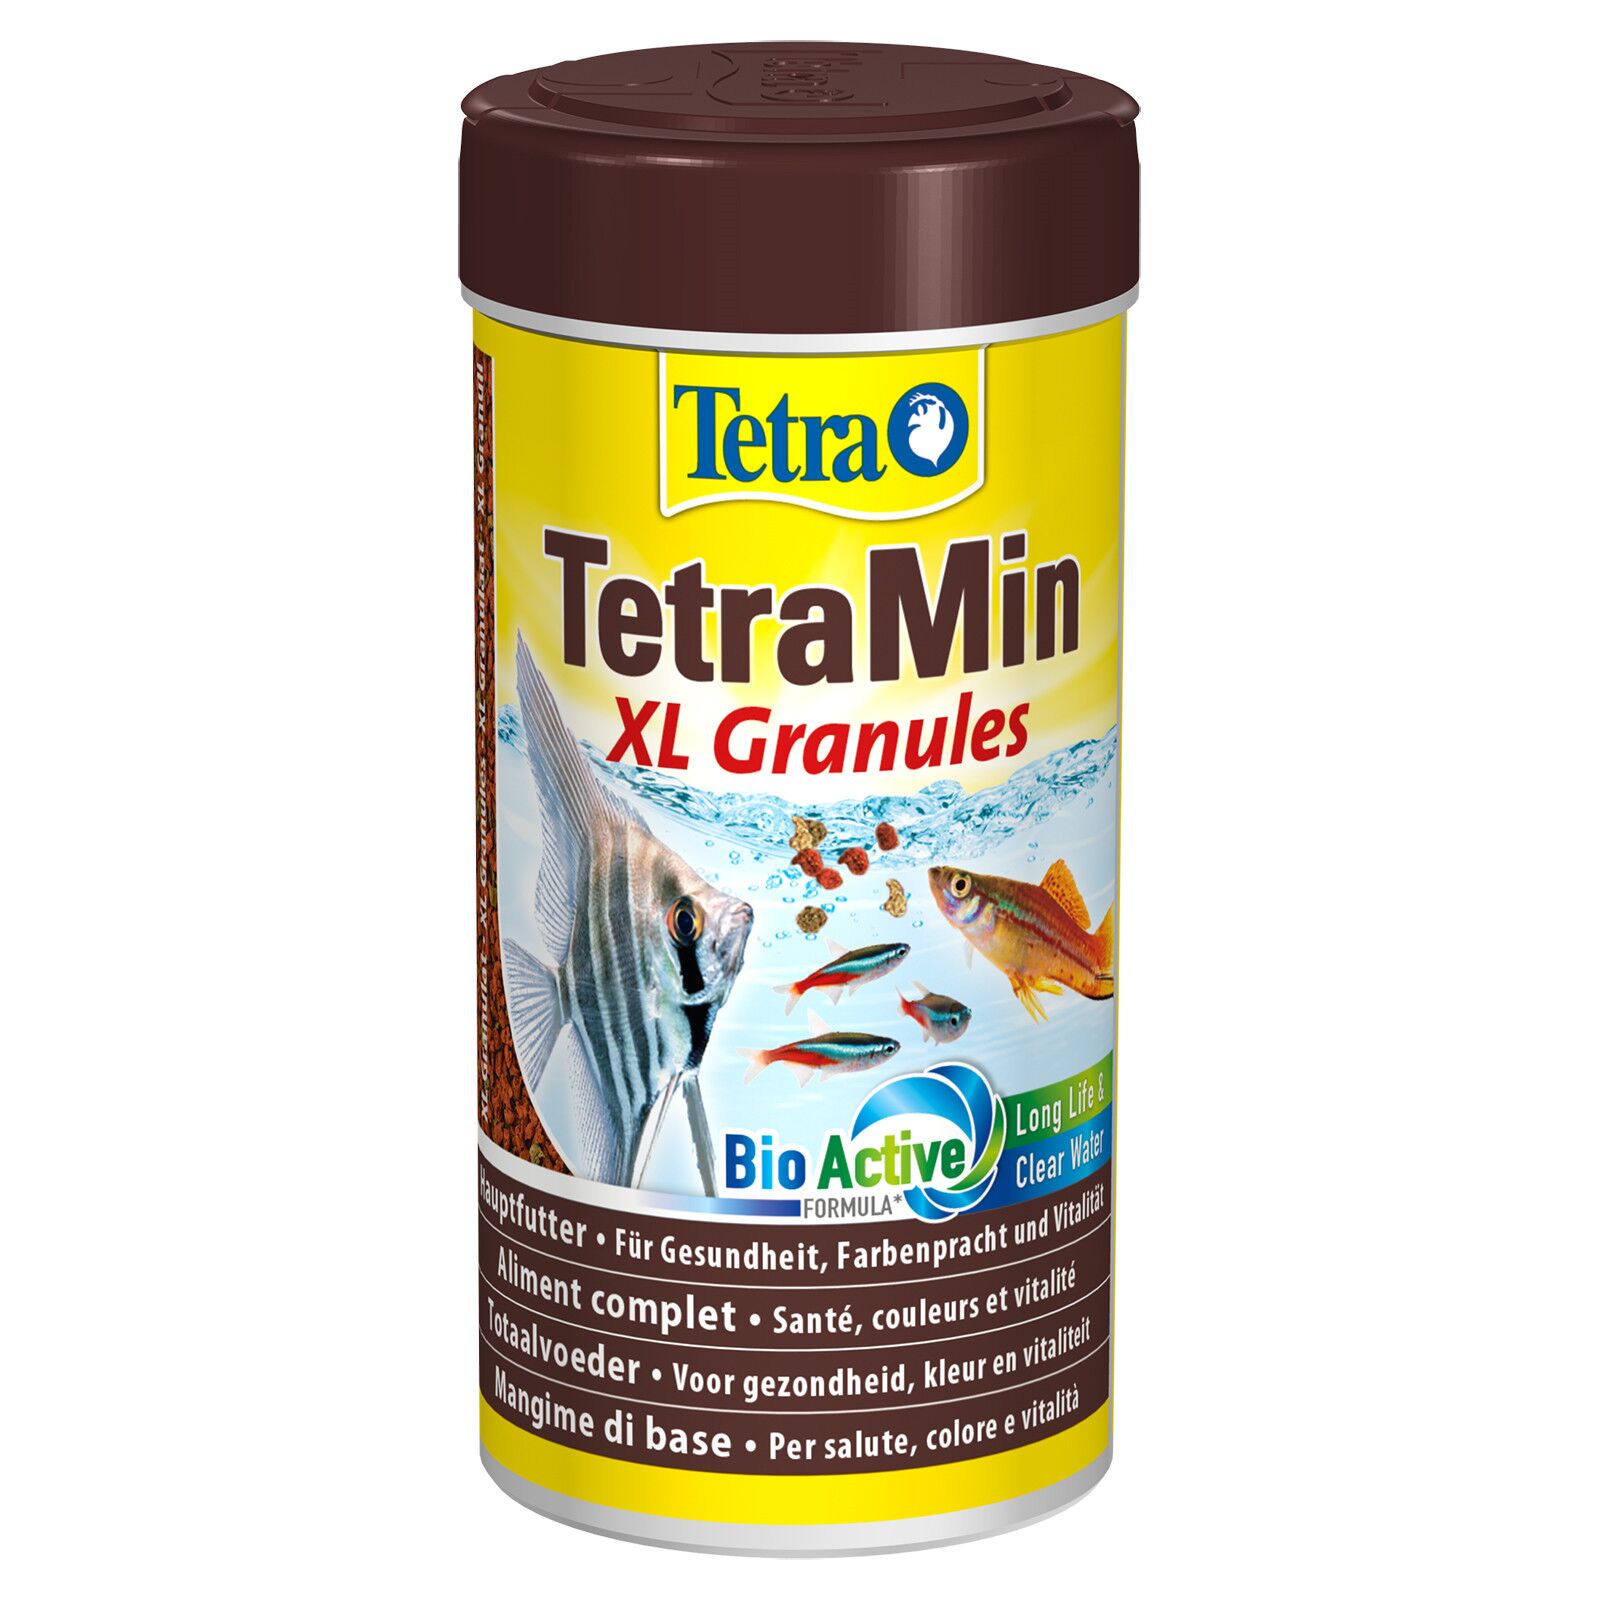 TetraMin®Granules 250ml - aquascape